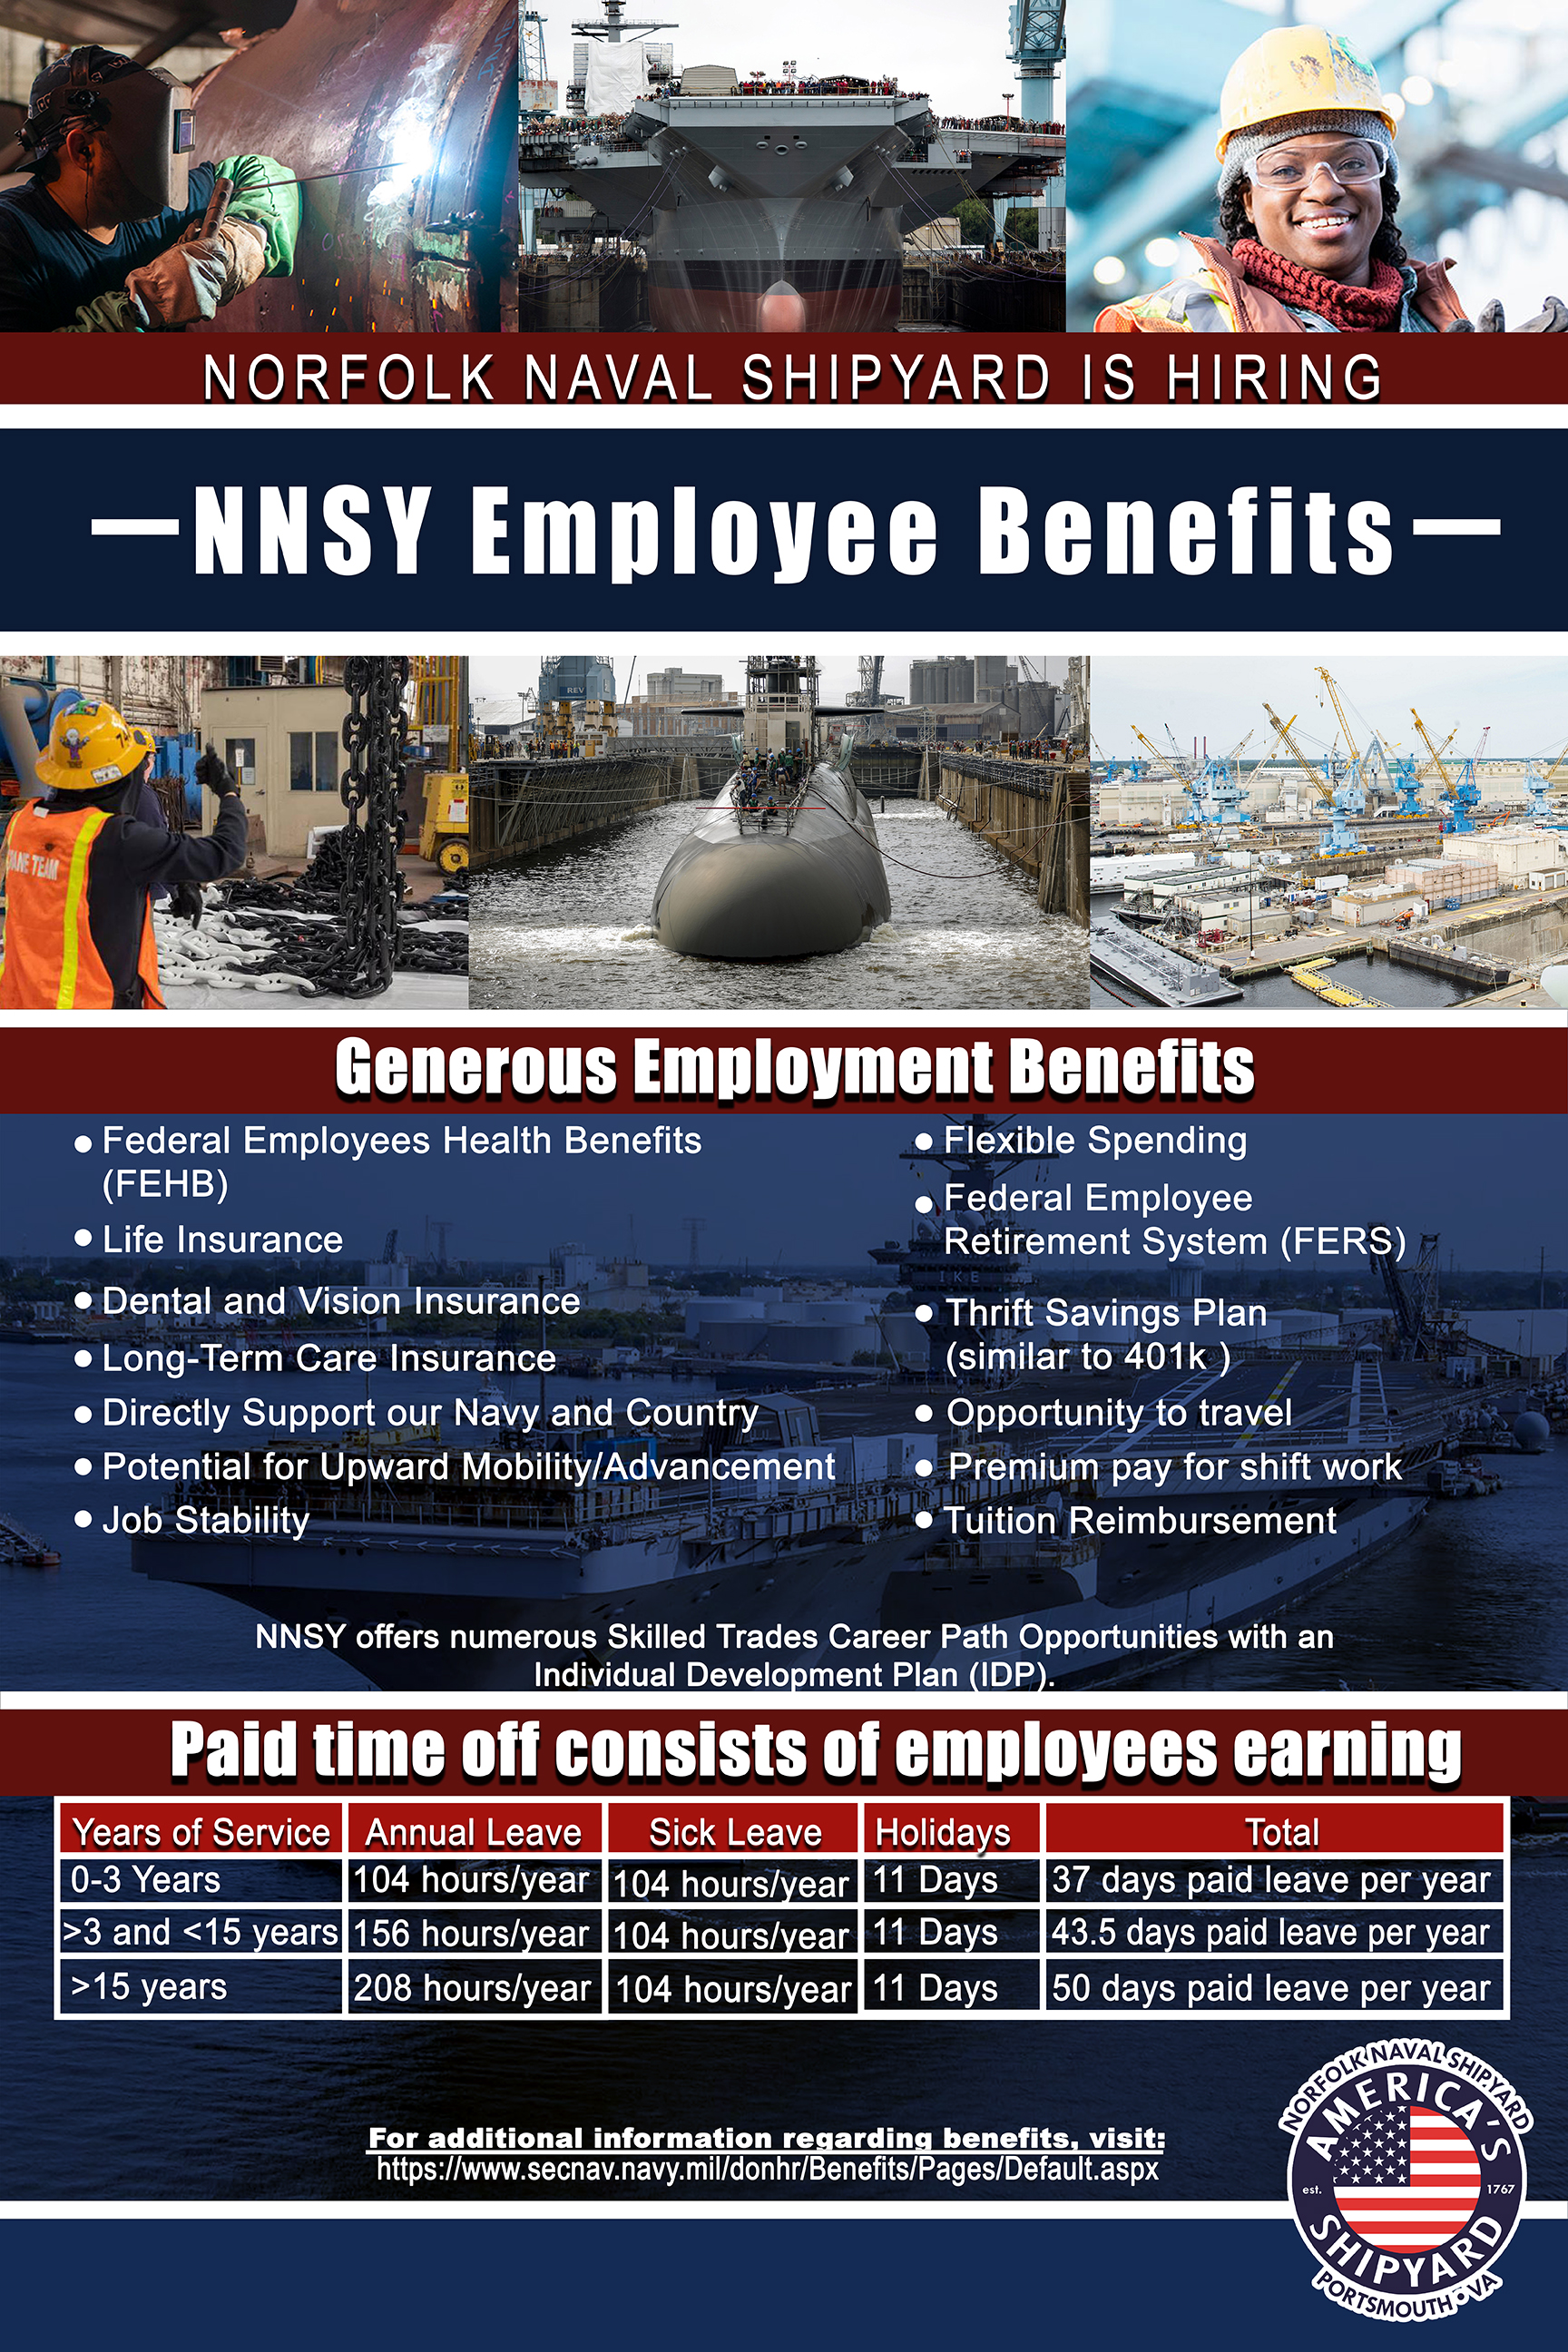 NNSY Employee Benefits